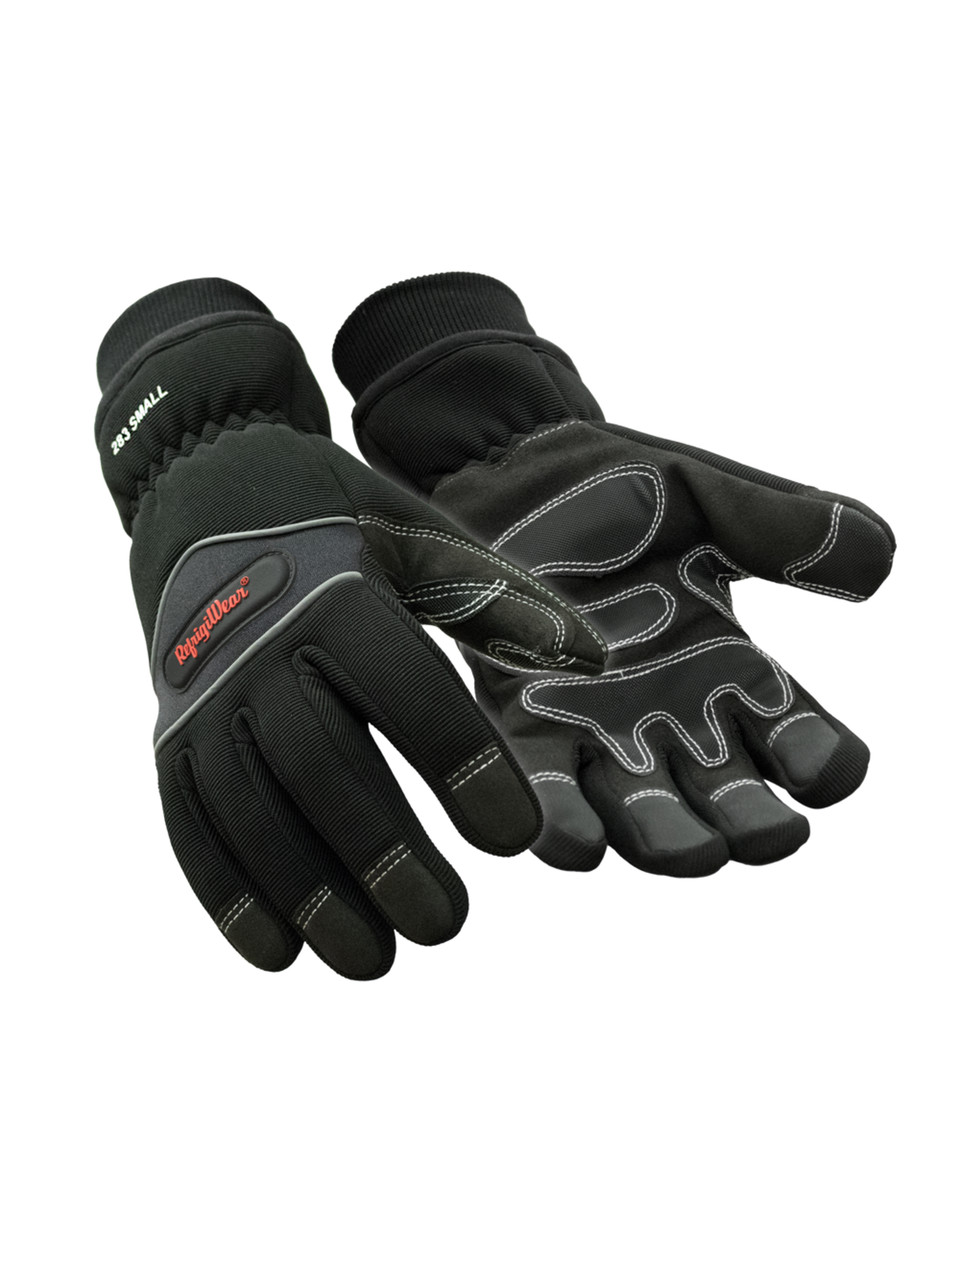 High Abrasion 2.0 Glove